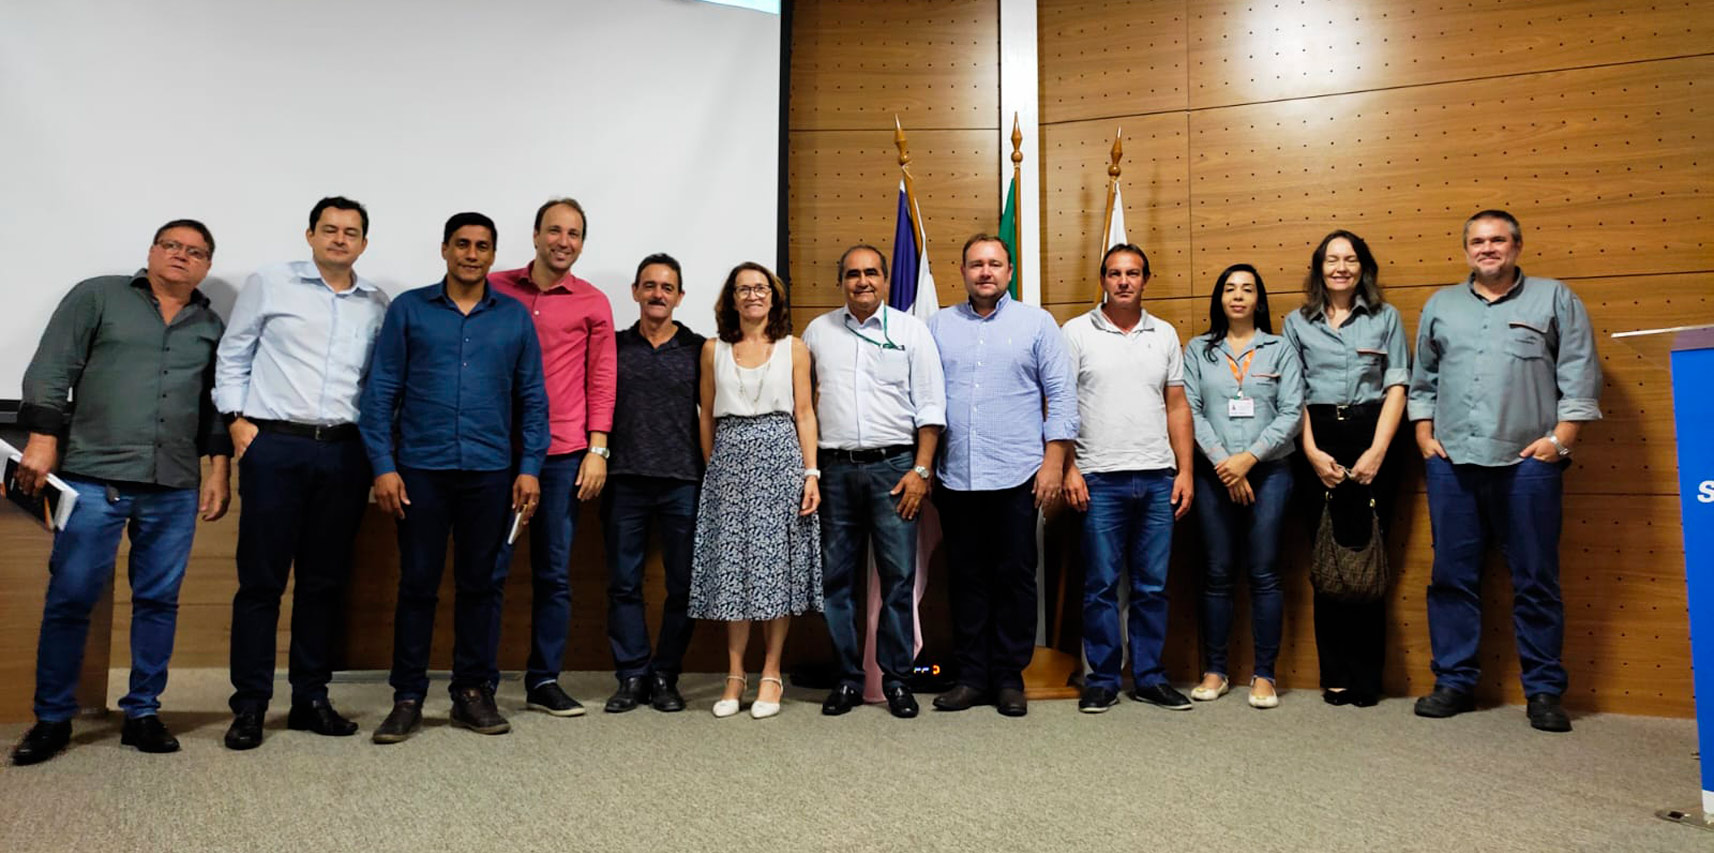 Secretário de Vargem Alta participa do Fórum dos Secretários Municipais de Agricultura do Espírito Santo – FOSEMAG